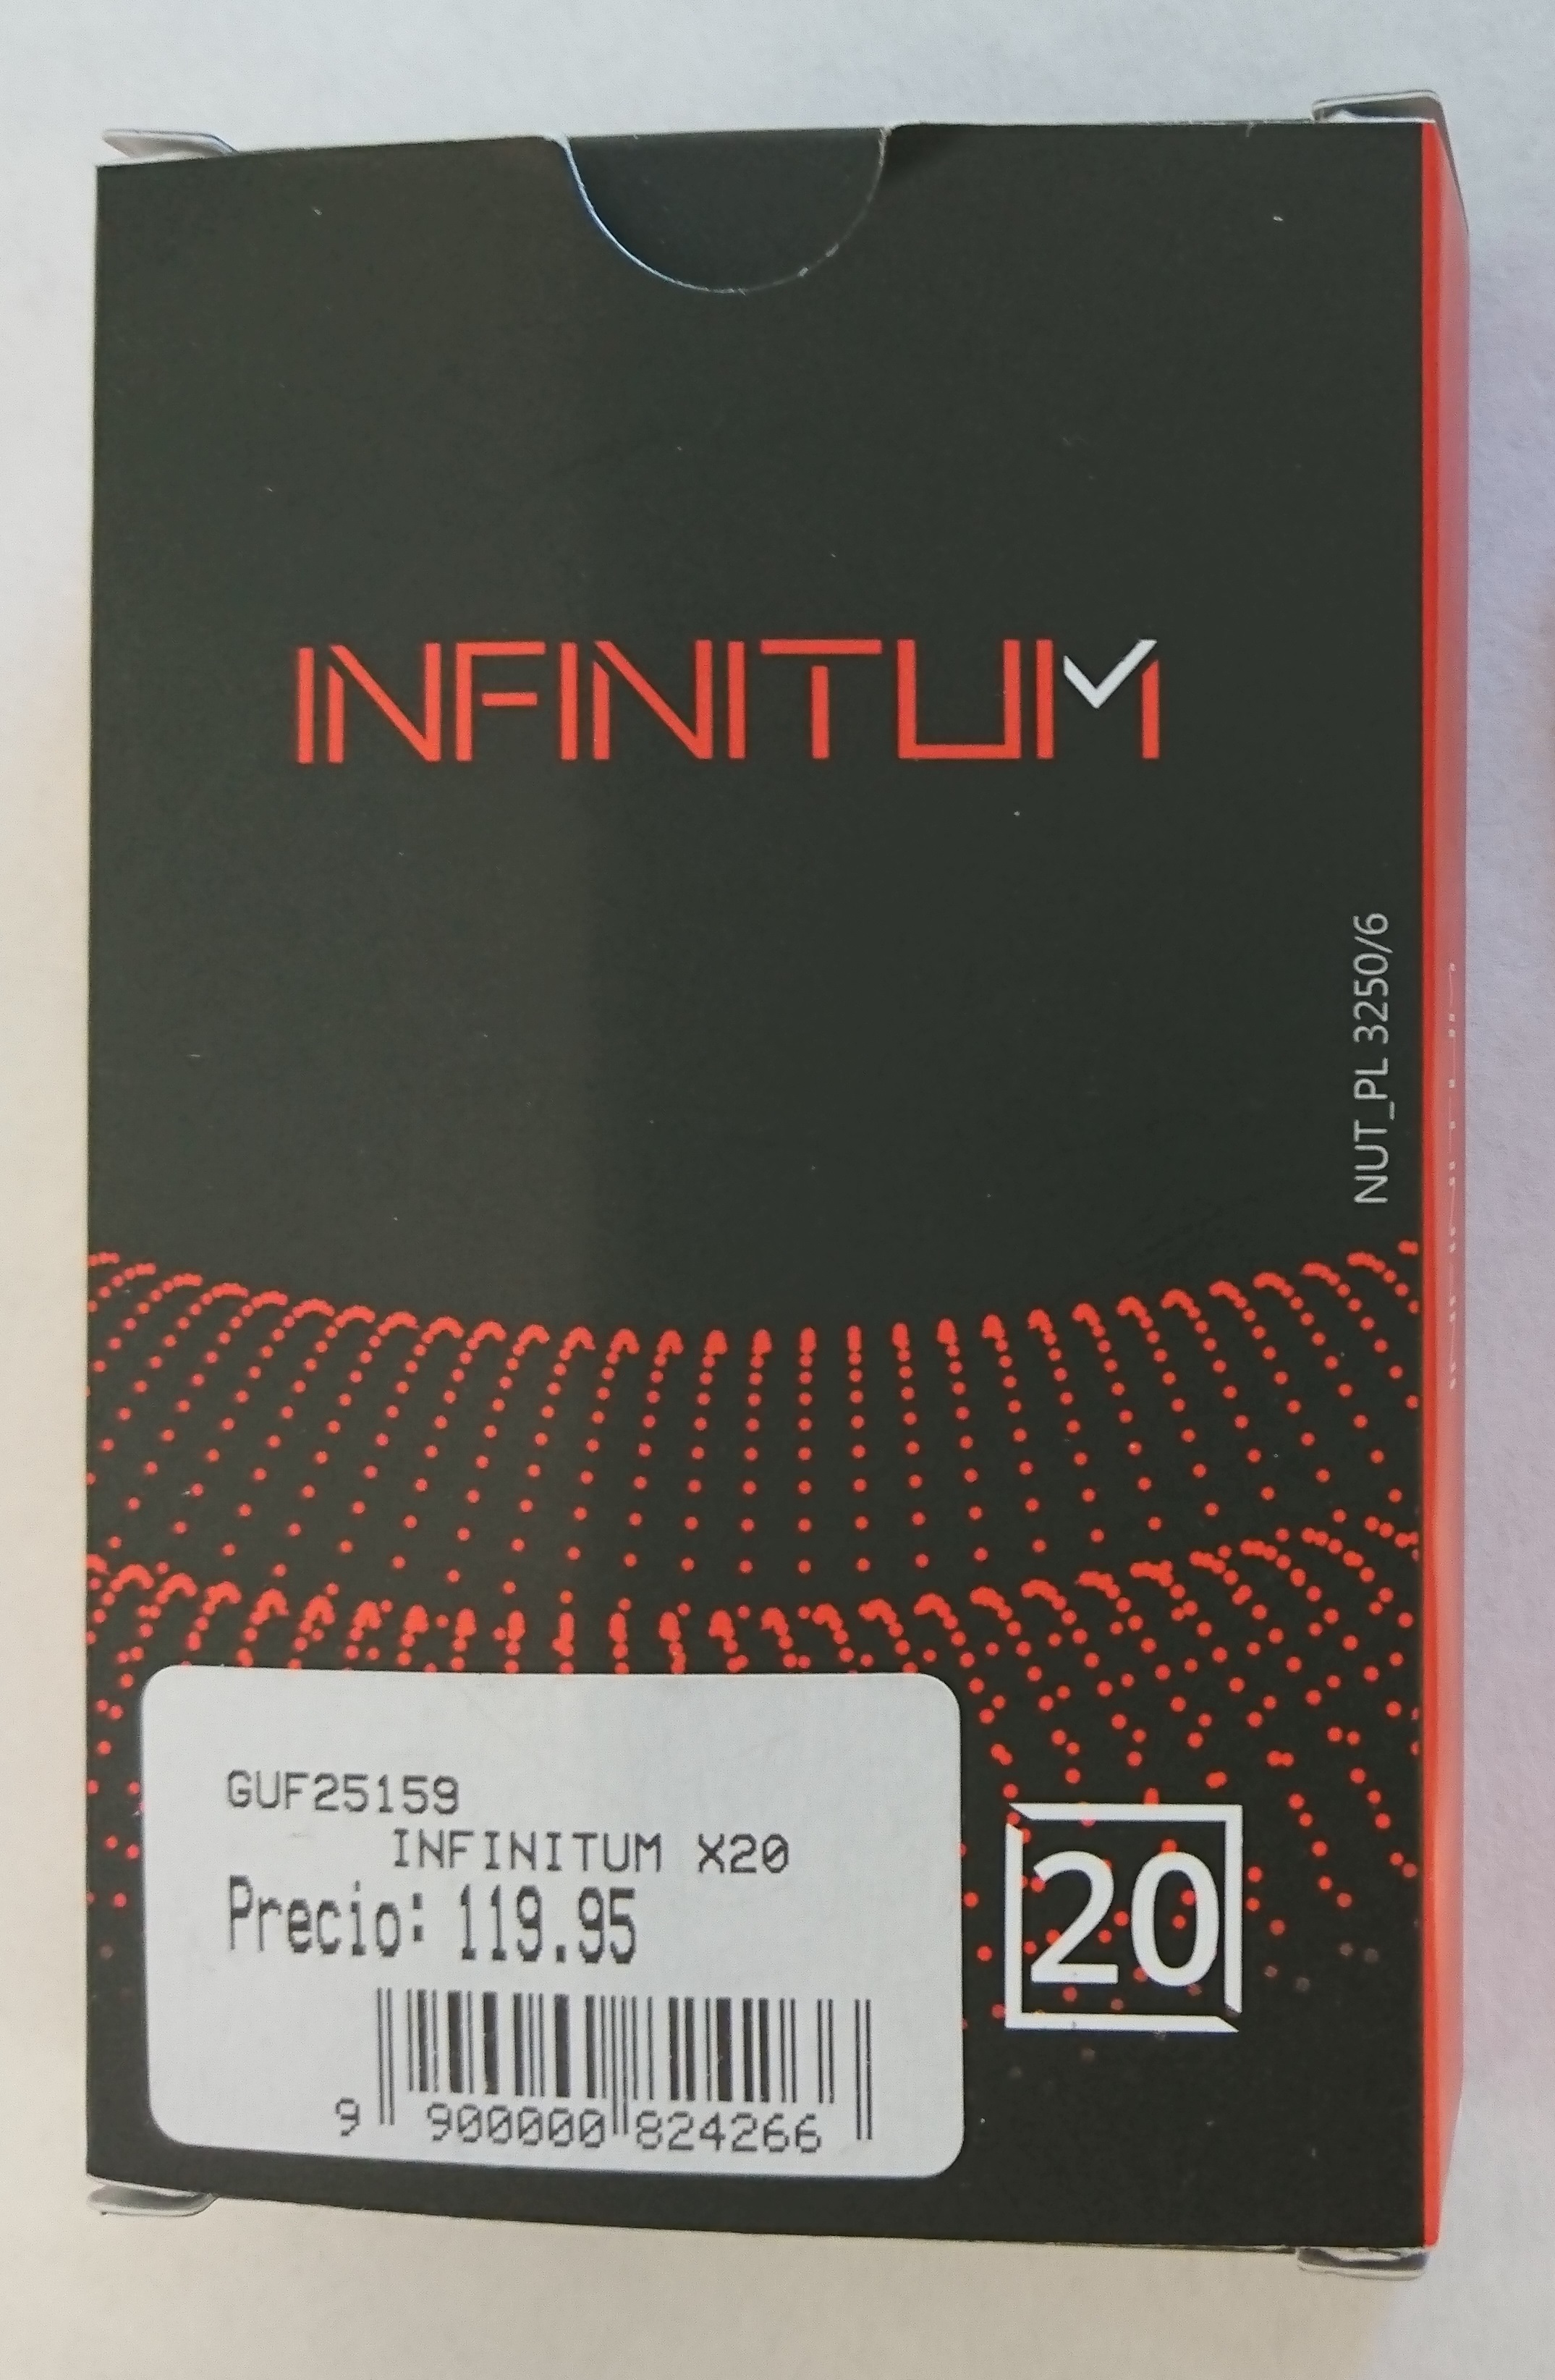 Billede af det ulovlige produkt: Infinitum